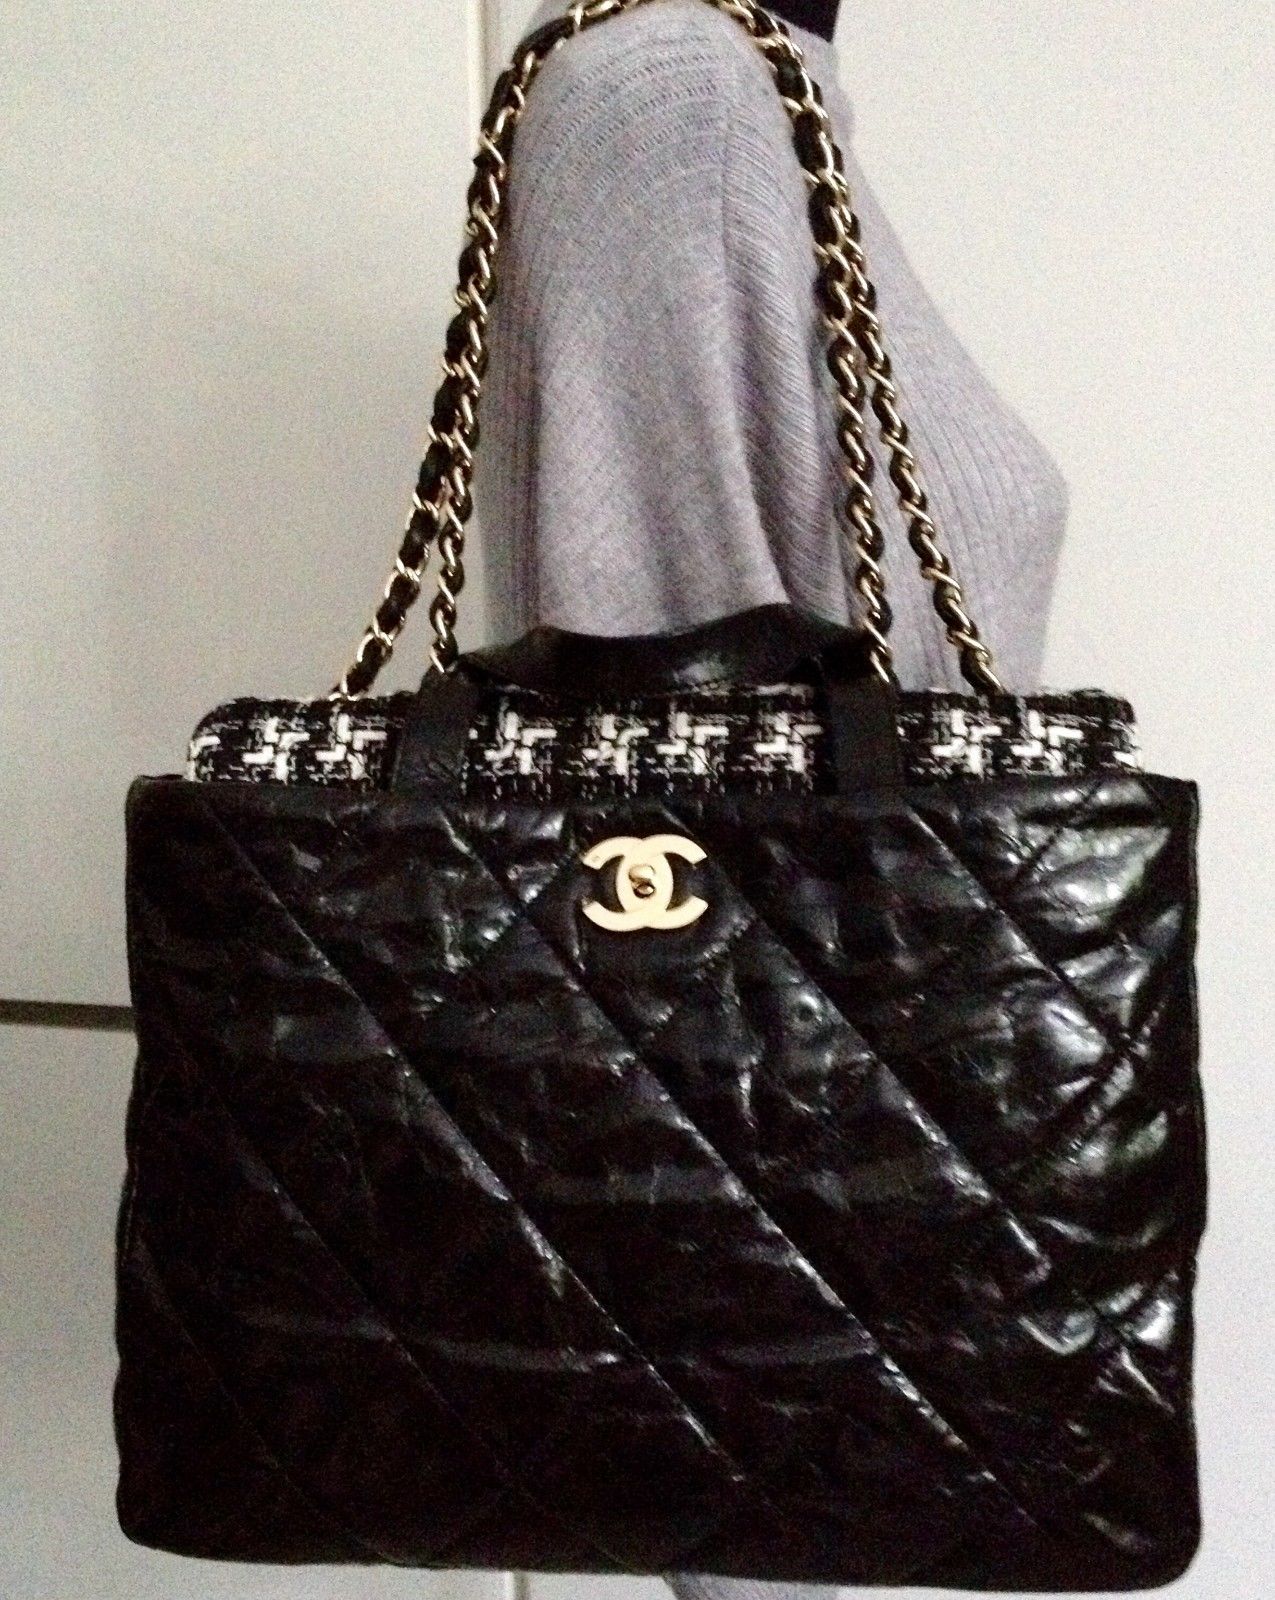 Chanel Black In the Mix Portobello Soft CC Turnlock Tote Bag